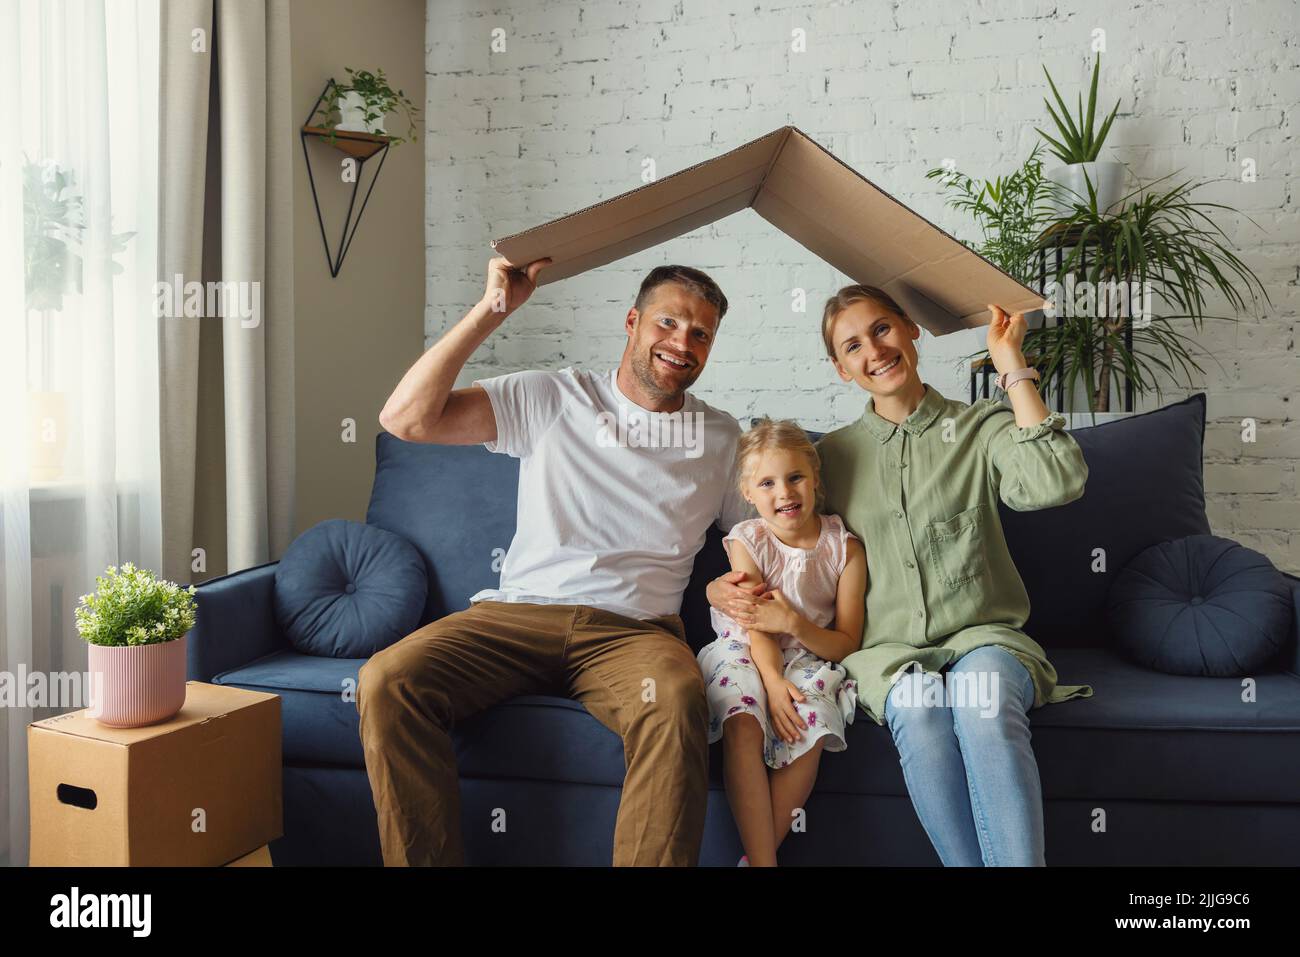 famille heureuse avec enfant tenant le toit en carton sur la tête. nouveau concept de maison et d'hypothèque Banque D'Images